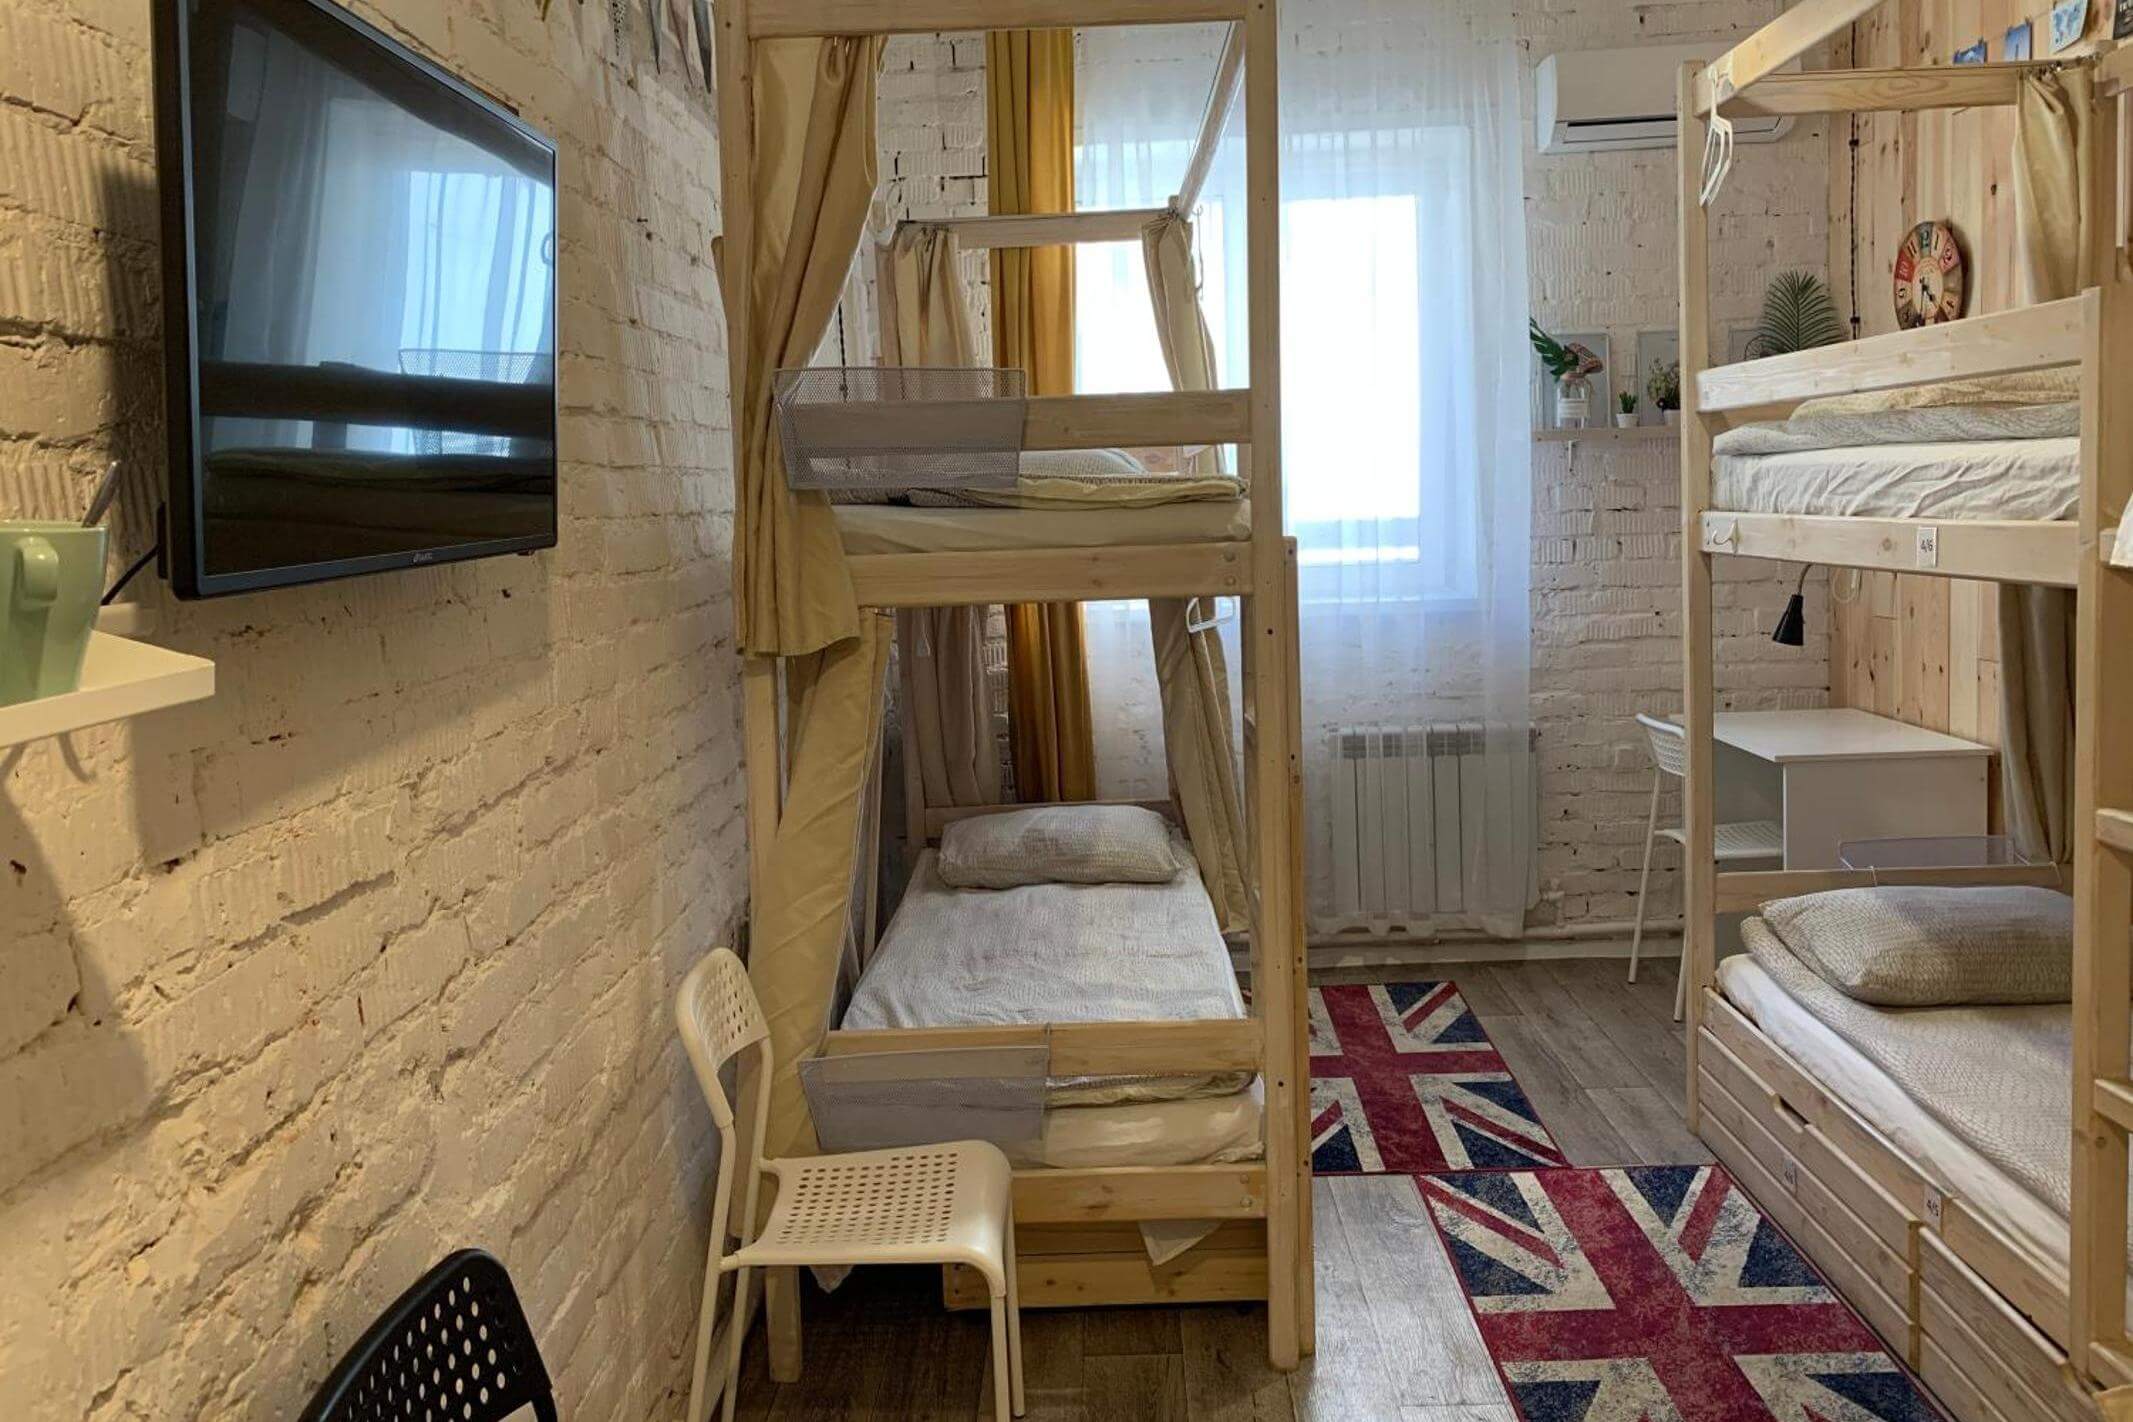 В номере: две двухъярусные кровати, рабочий стол и телевизор. На полу "британский флаг".